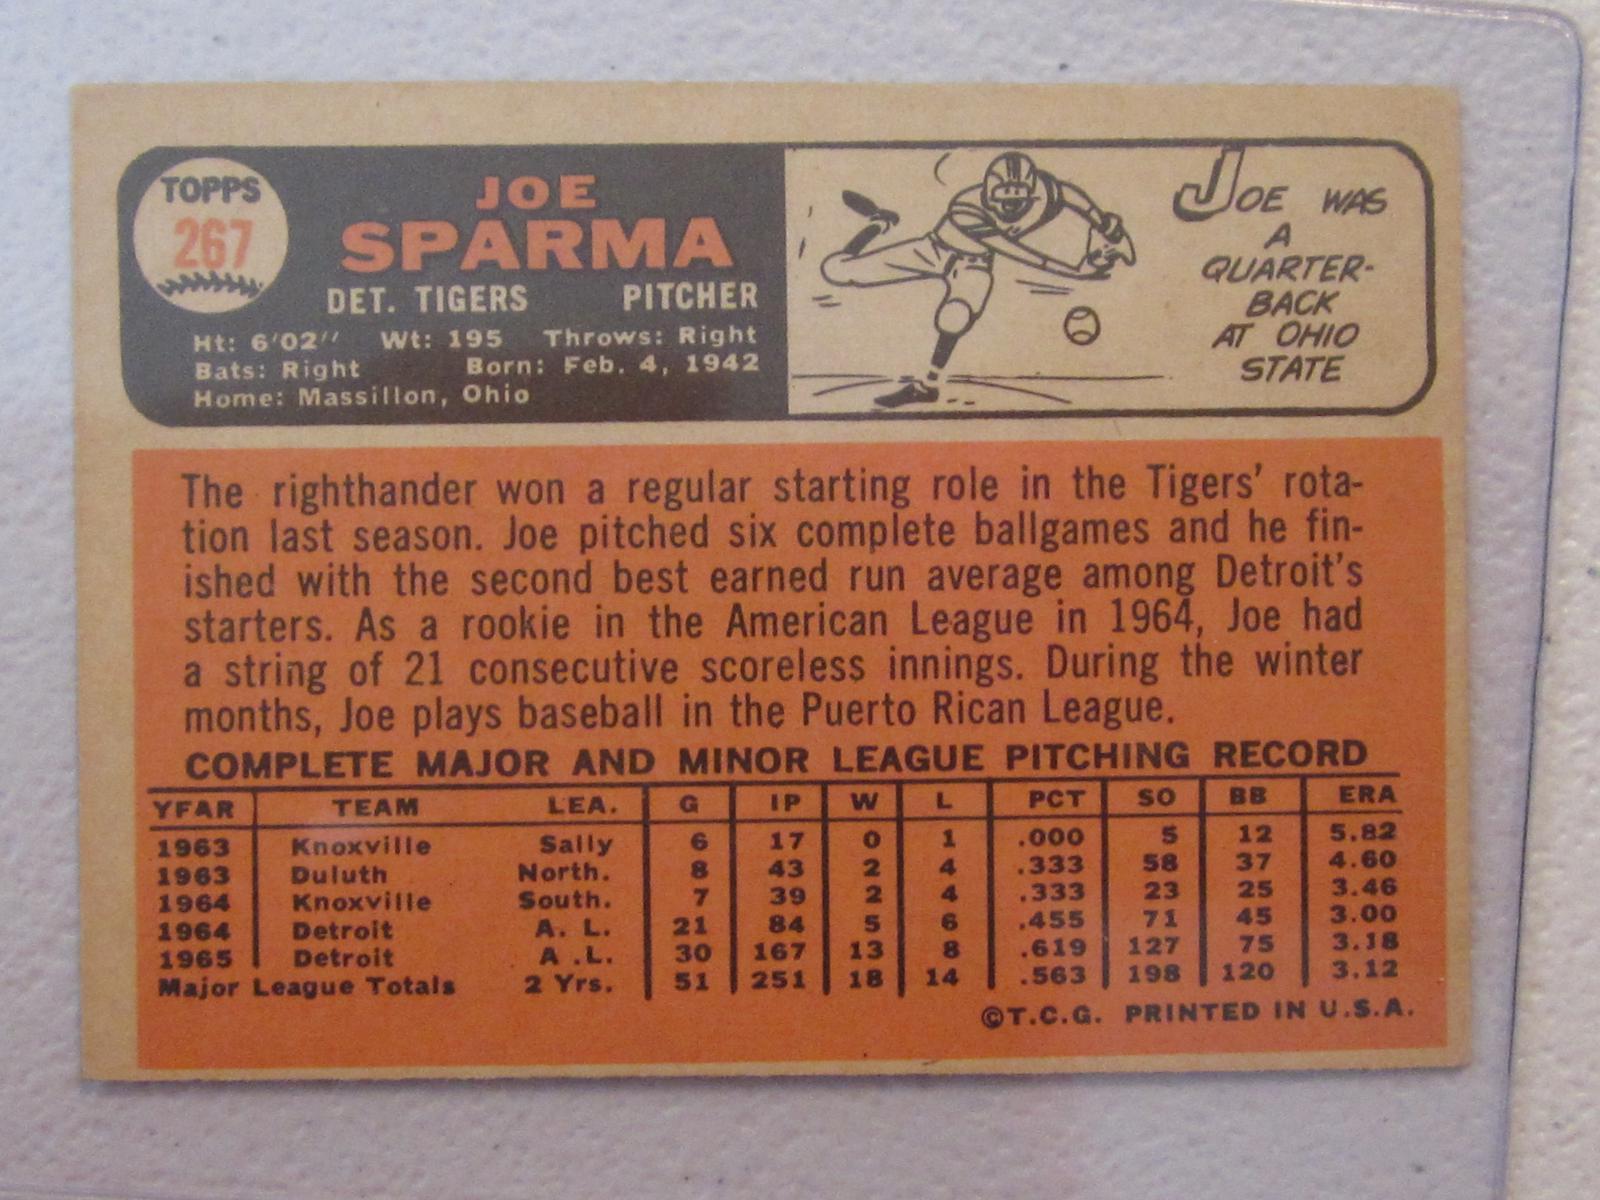 1966 TOPPS JOE SPARMA NO.267 VINTAGE